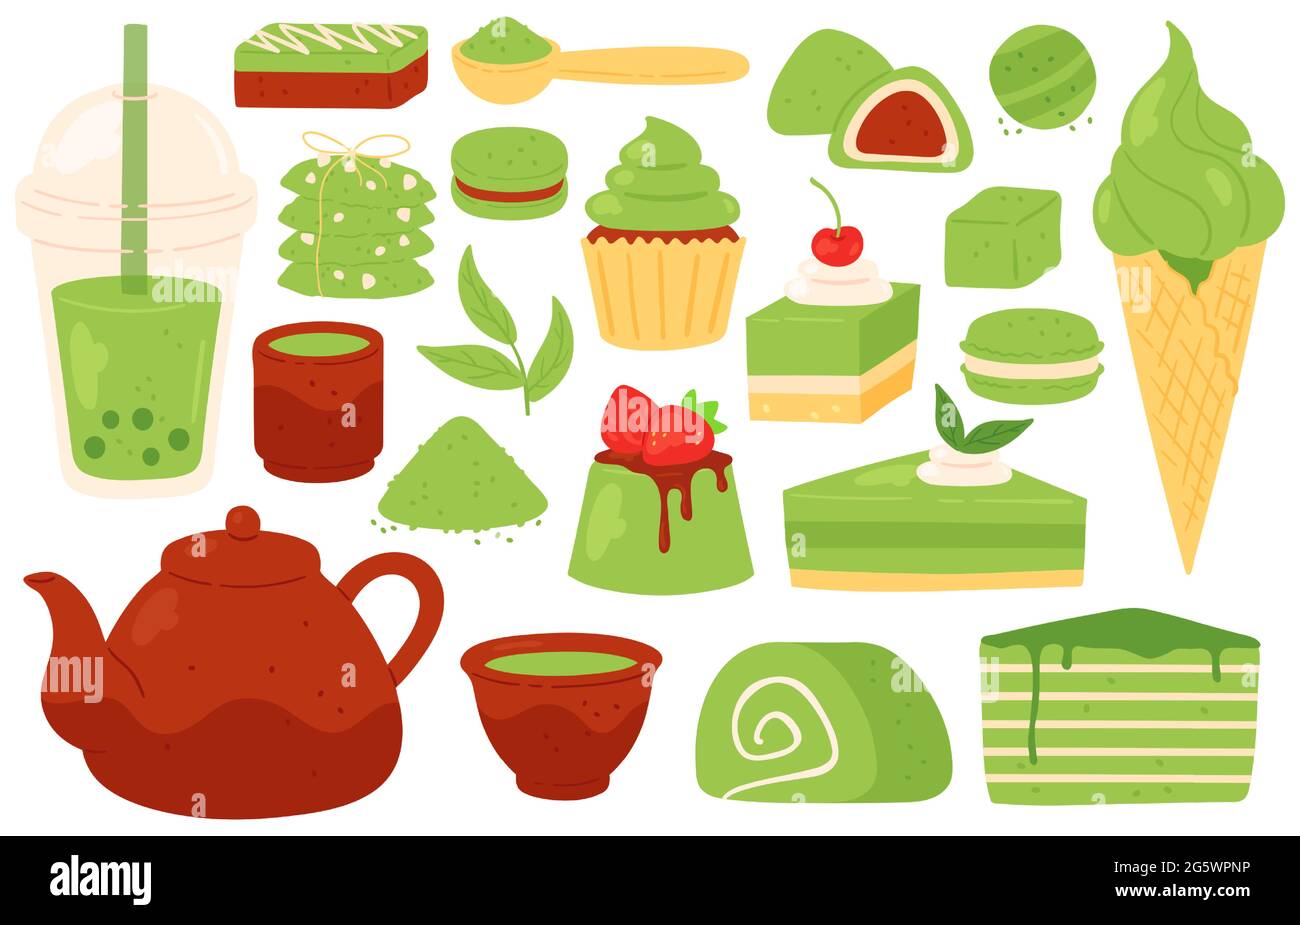 Matcha-Tee und Süßigkeiten. Japanische grüne Matcha-Produkte, Pulver, Blätter, Teekannen und Tassen, Bubble Tea. Gesundes Gebäck und Desserts Vektor-Set Stock Vektor